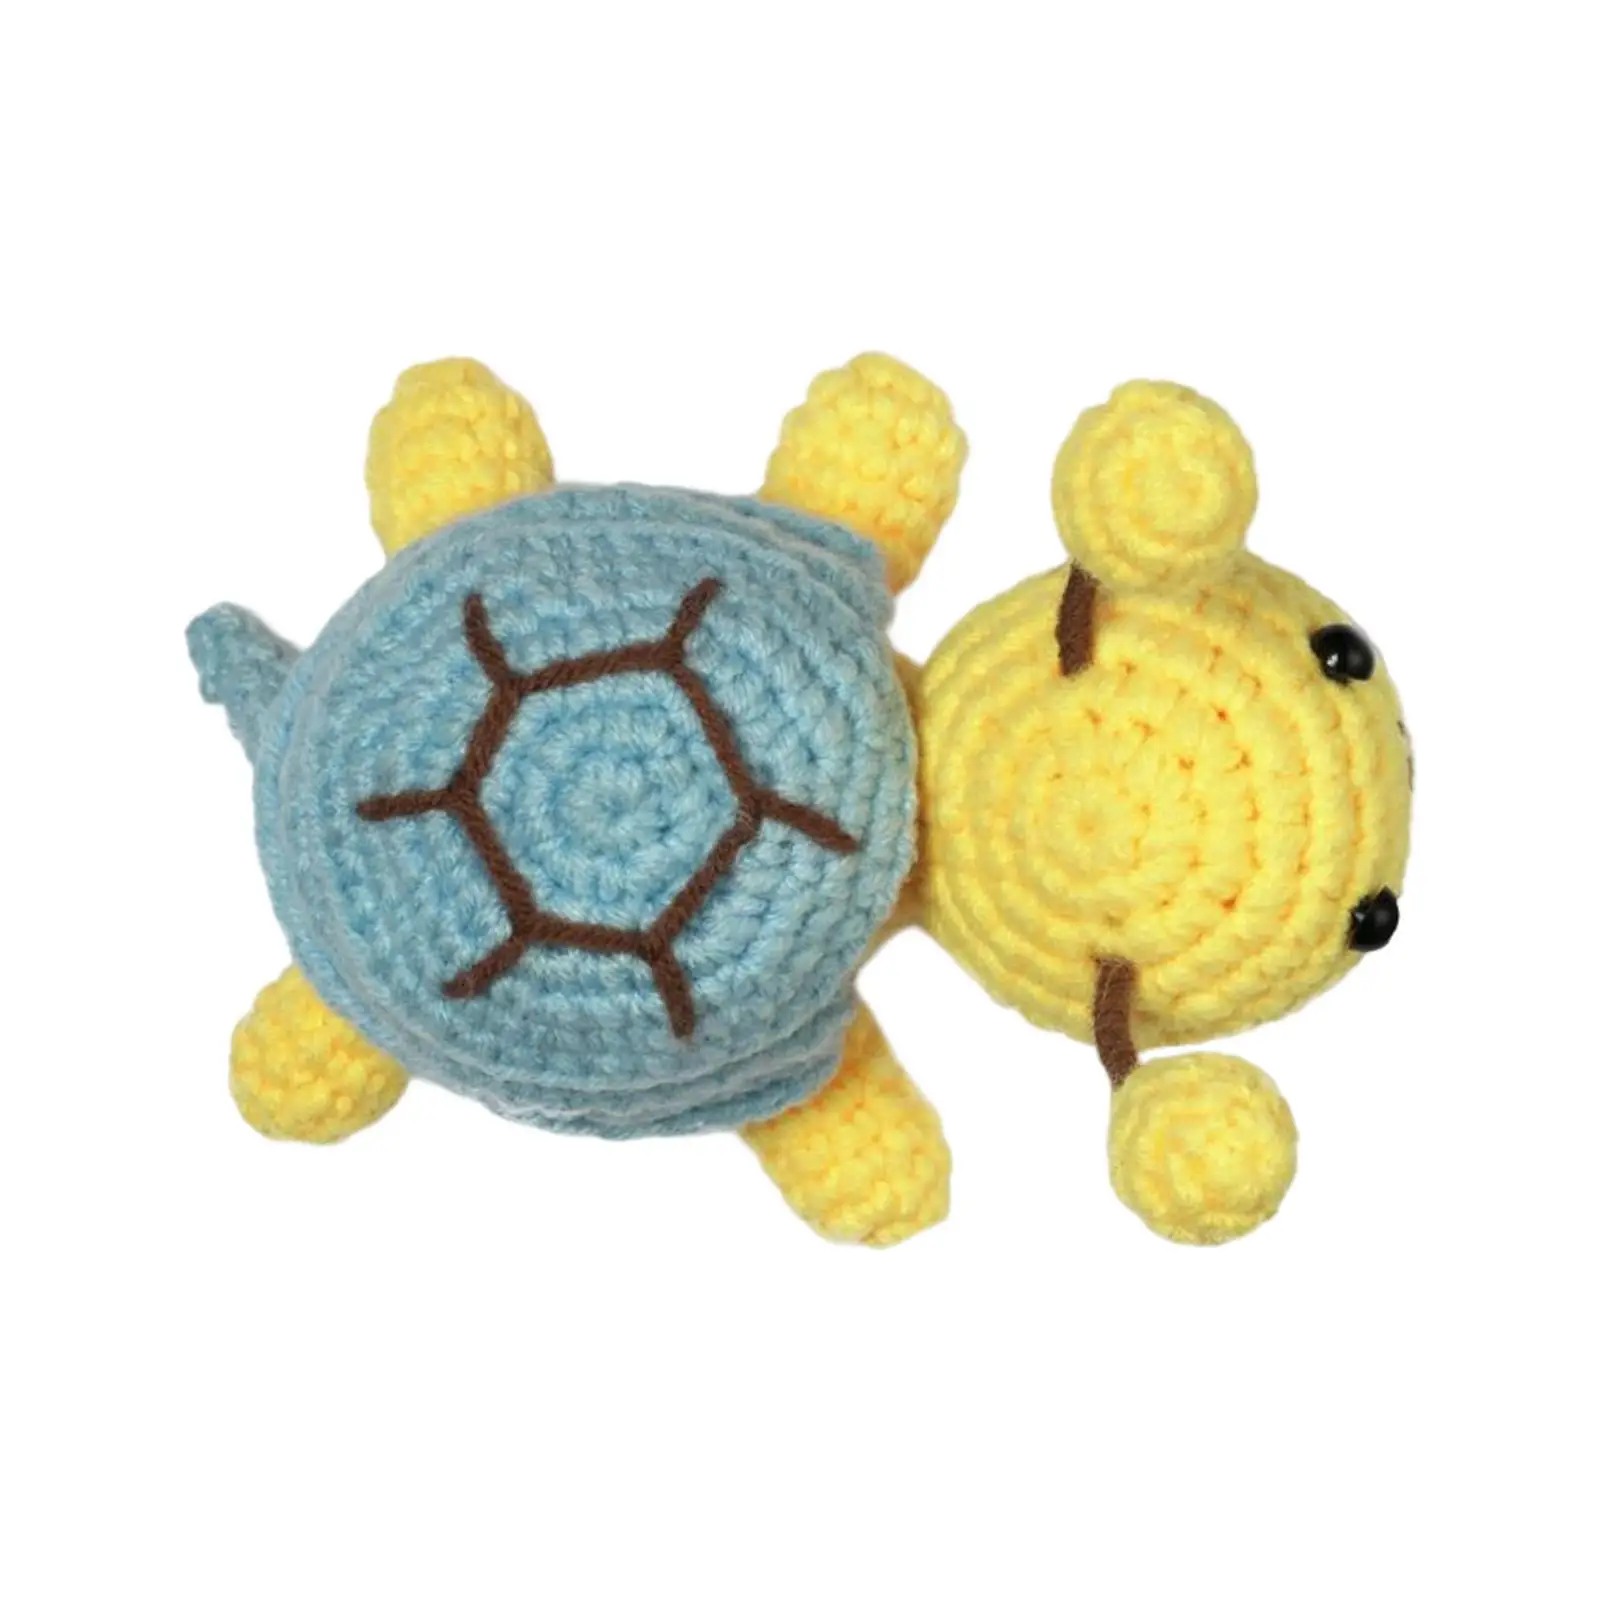 Handmade Animal Doll Crochet Kit Turtle Starter Hand Knitting Toy Crochet Kit Beginner